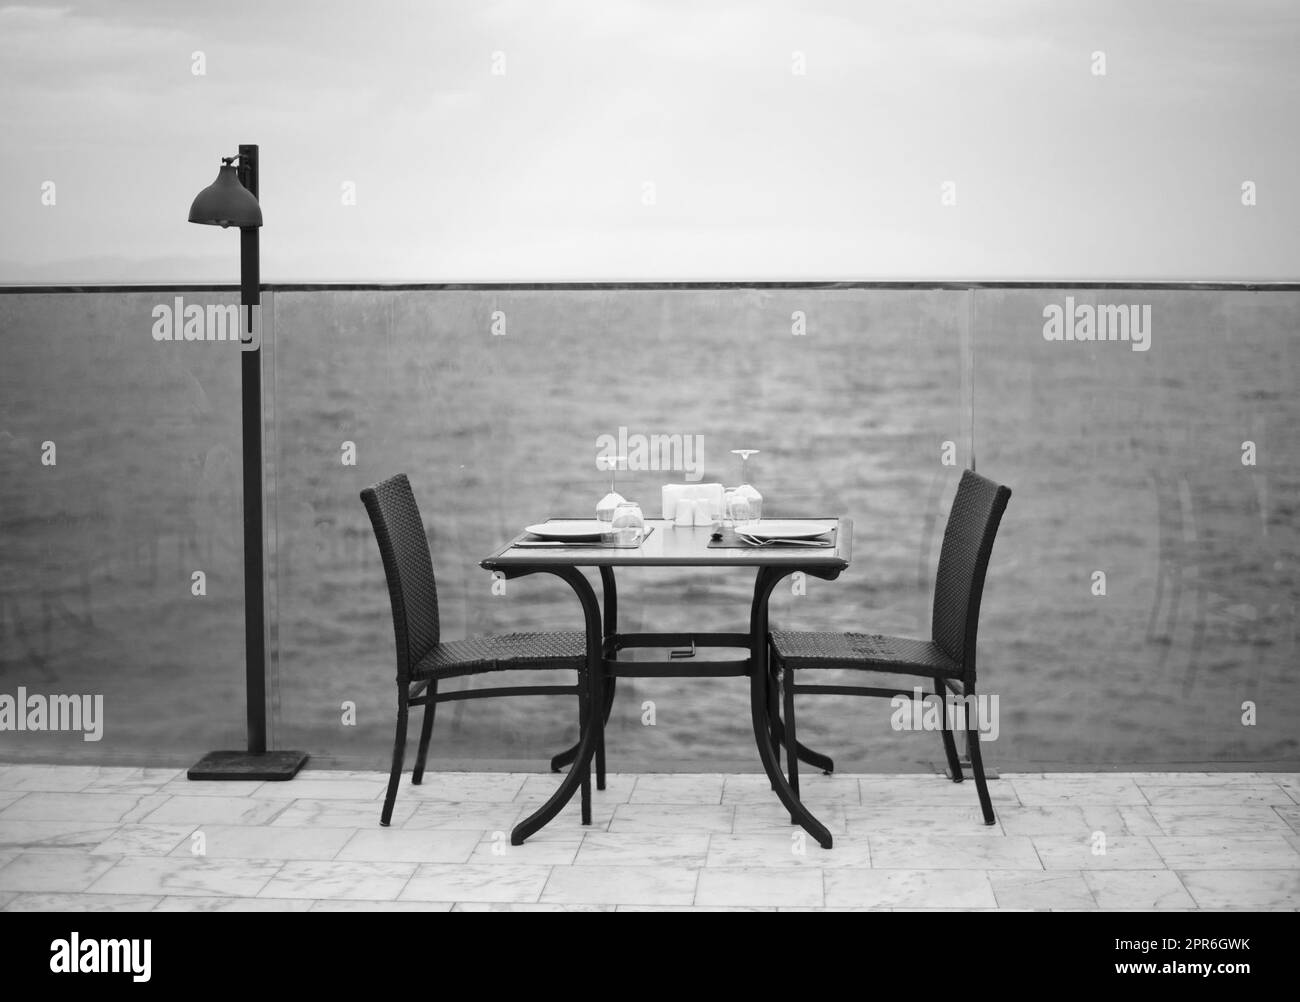 Increíble cena romántica en la playa. Romance y amor, mesa de comedor con vista al mar en el día nublado. Foto blanco negro Foto de stock